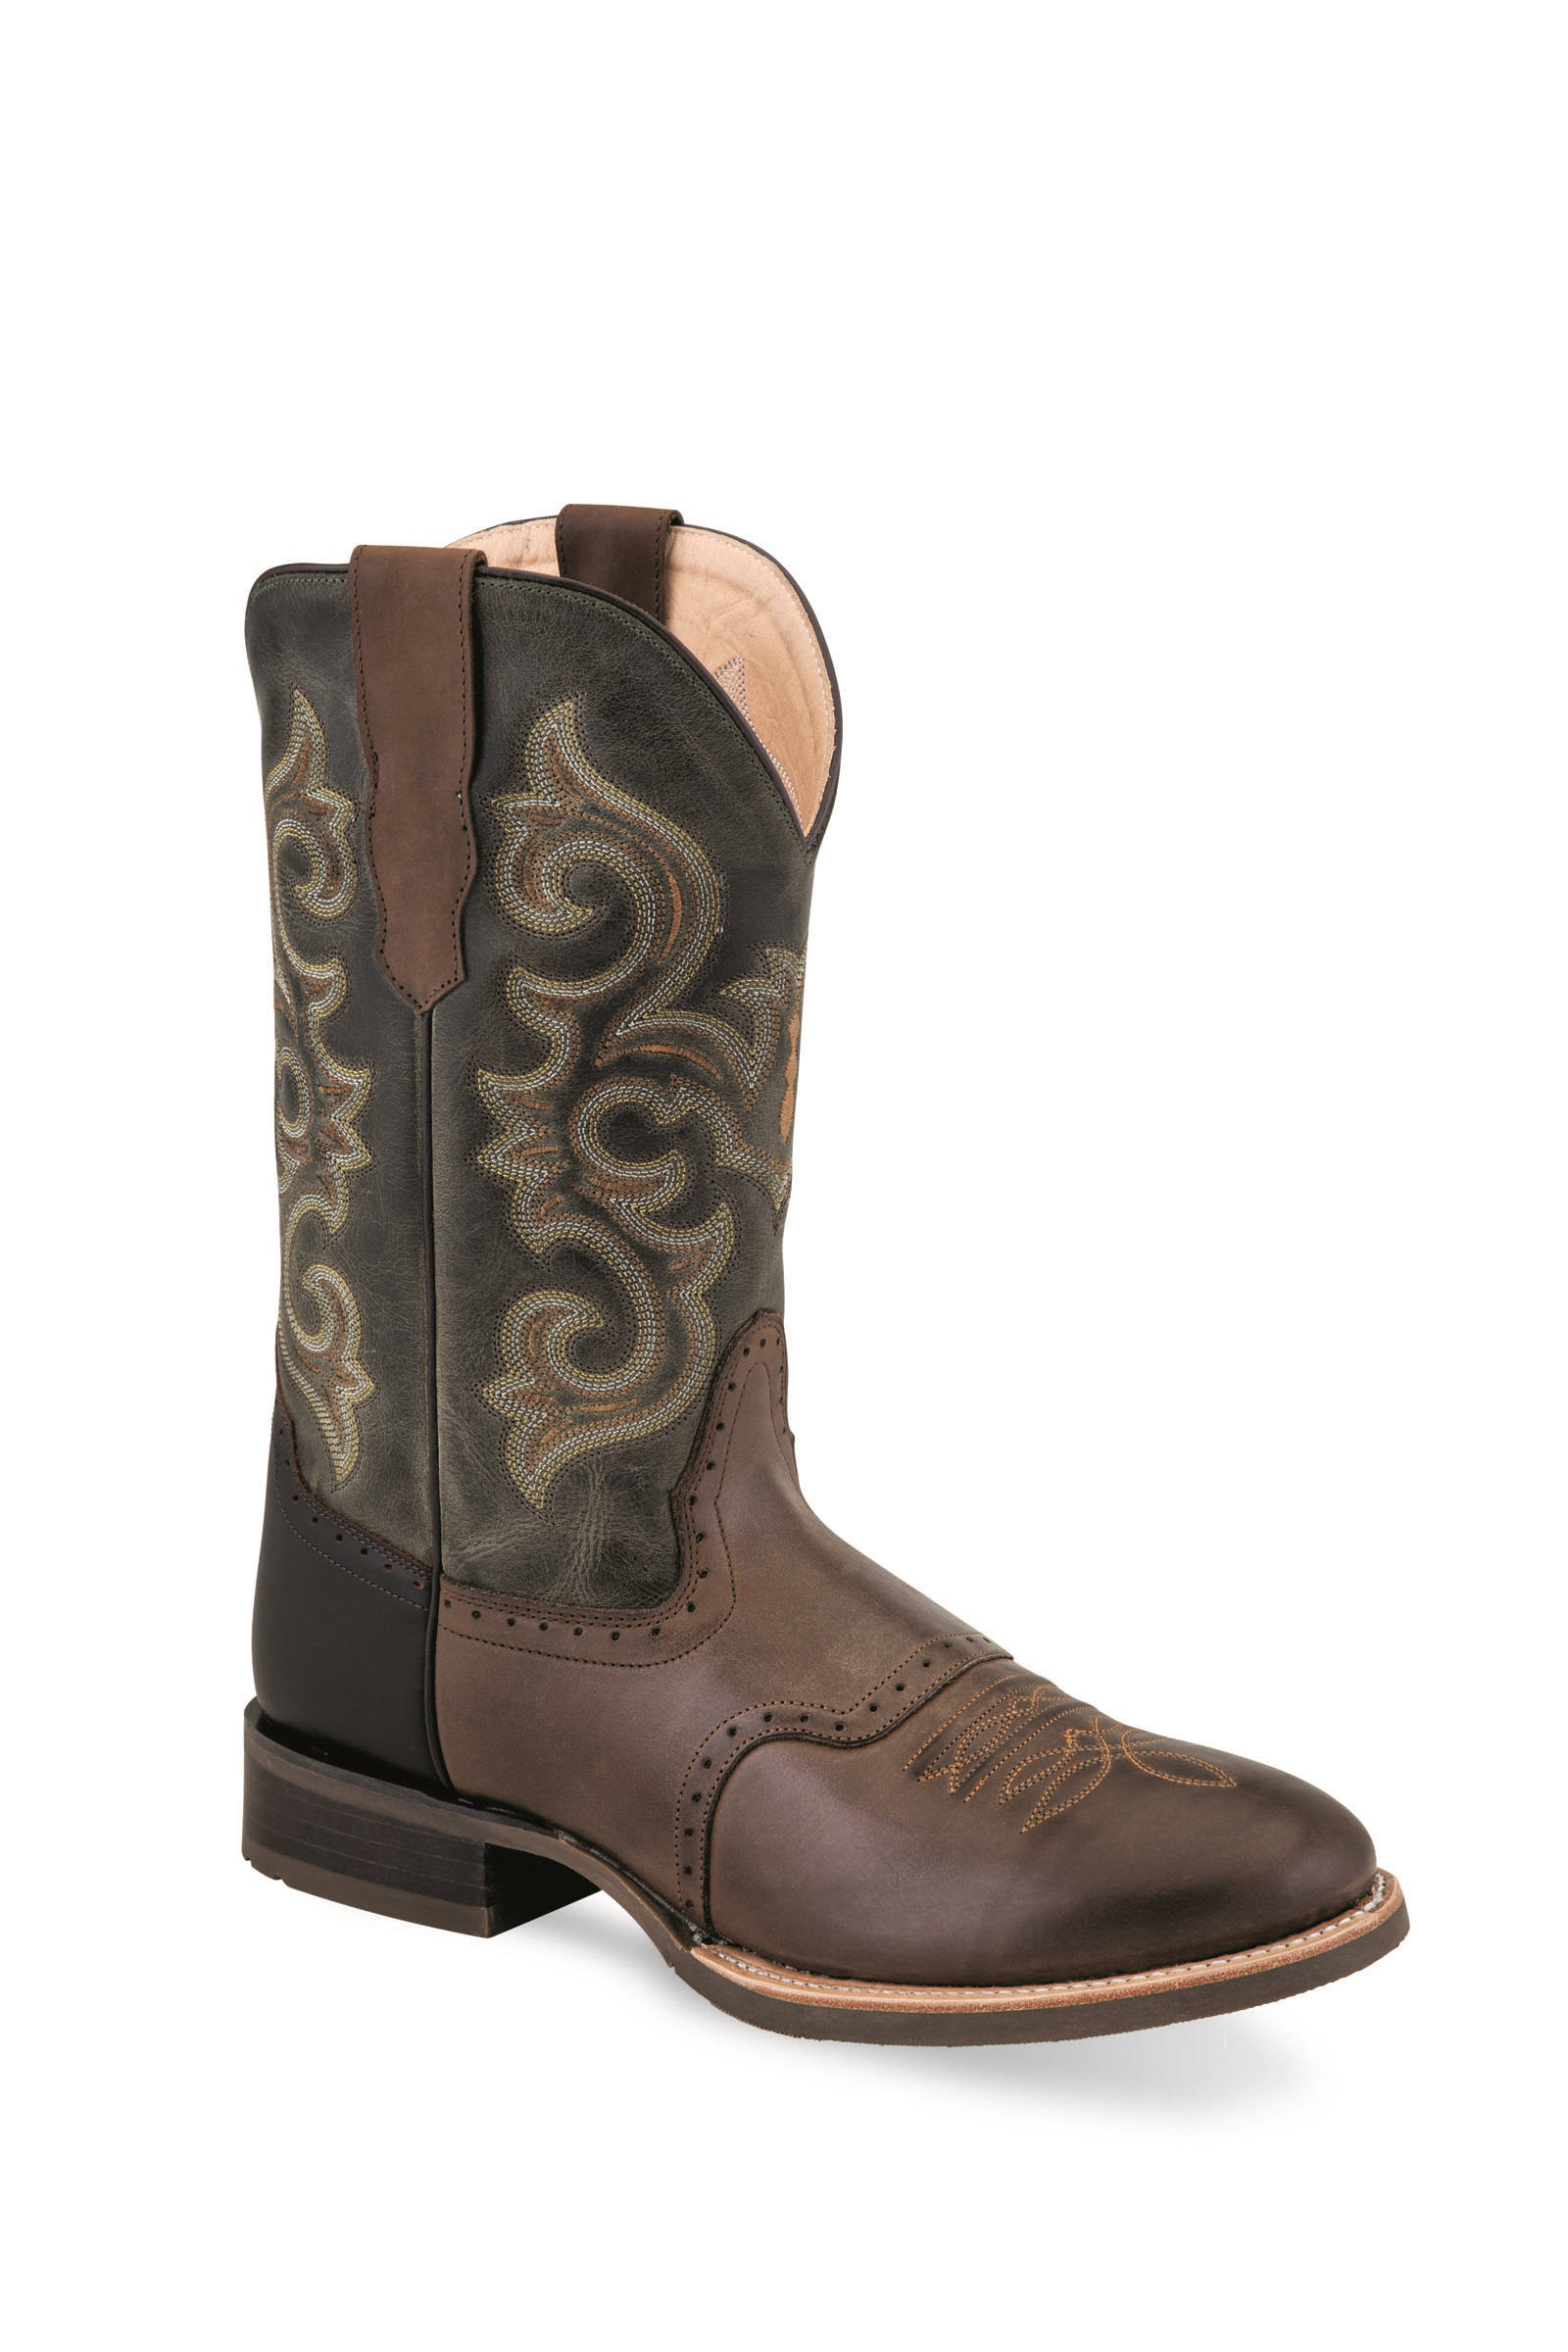 Cowboy boots men 5703, brown-dark green